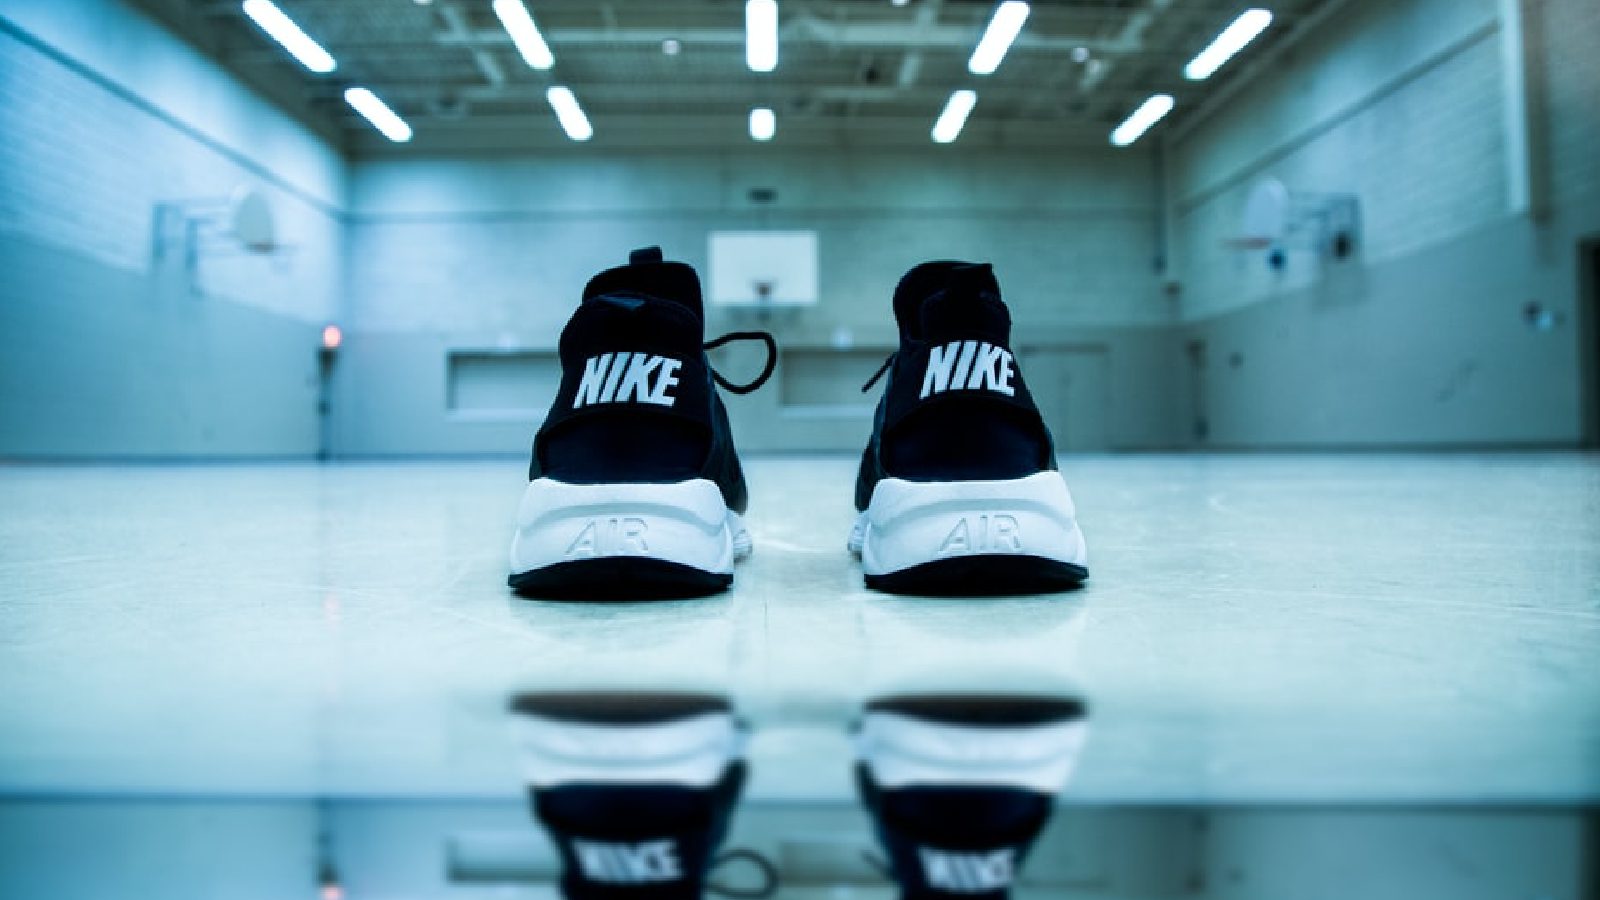 Adidașii Nike populari se vând cu 90.000 USD pe StockX